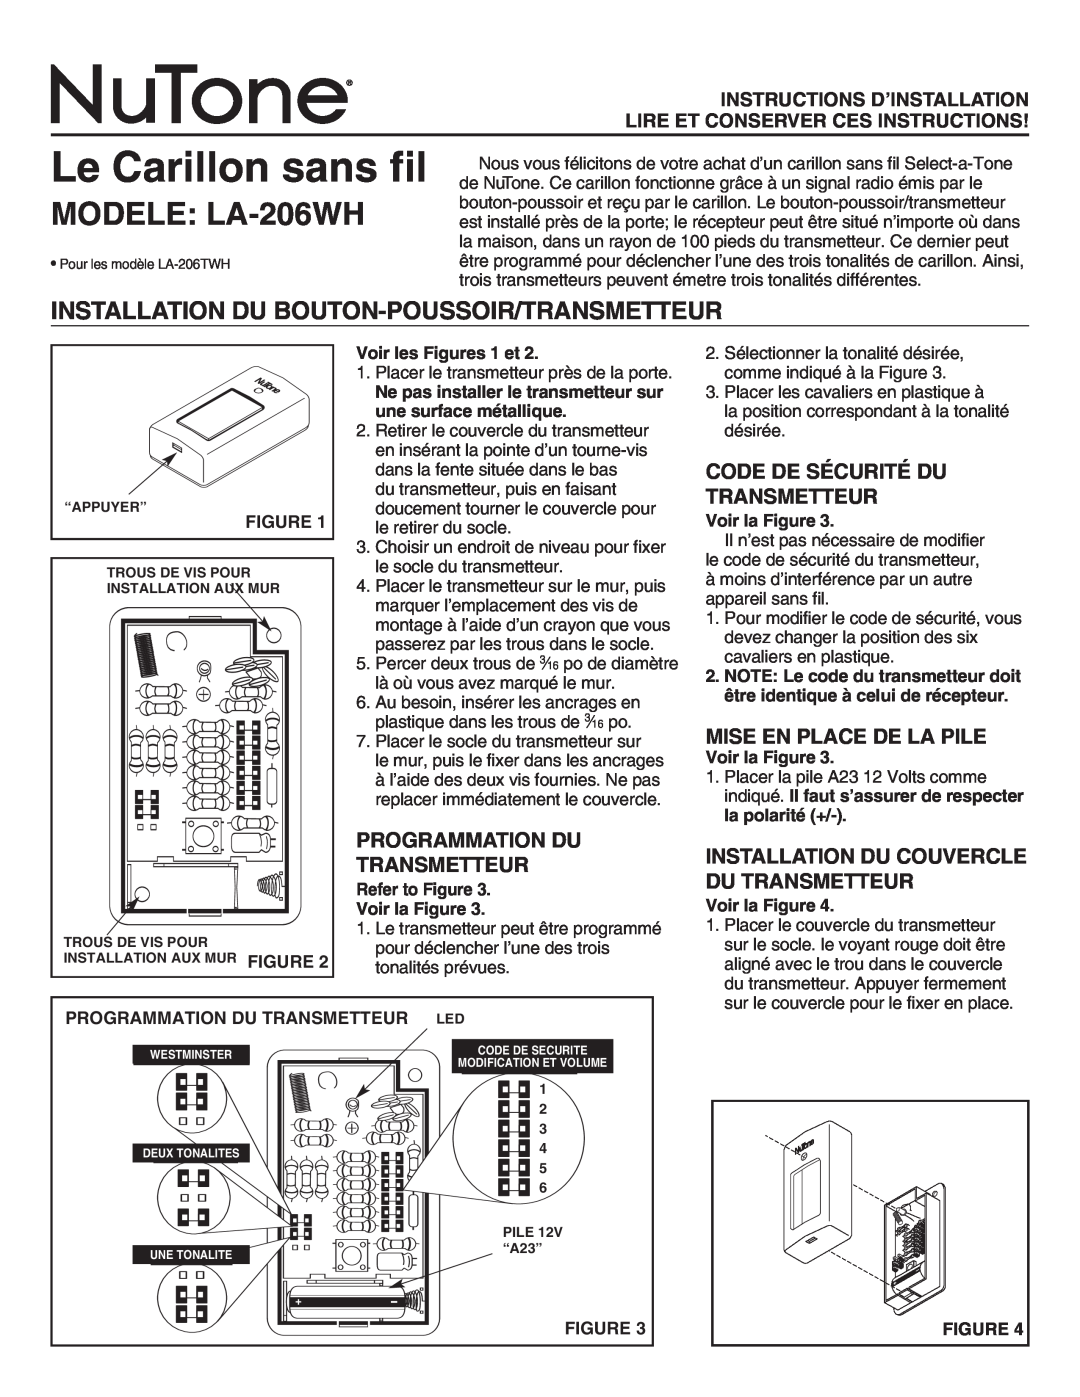 NuTone manual MODELE LA-206WH, Installation Du Bouton-Poussoir/Transmetteur, Programmation Du Transmetteur 